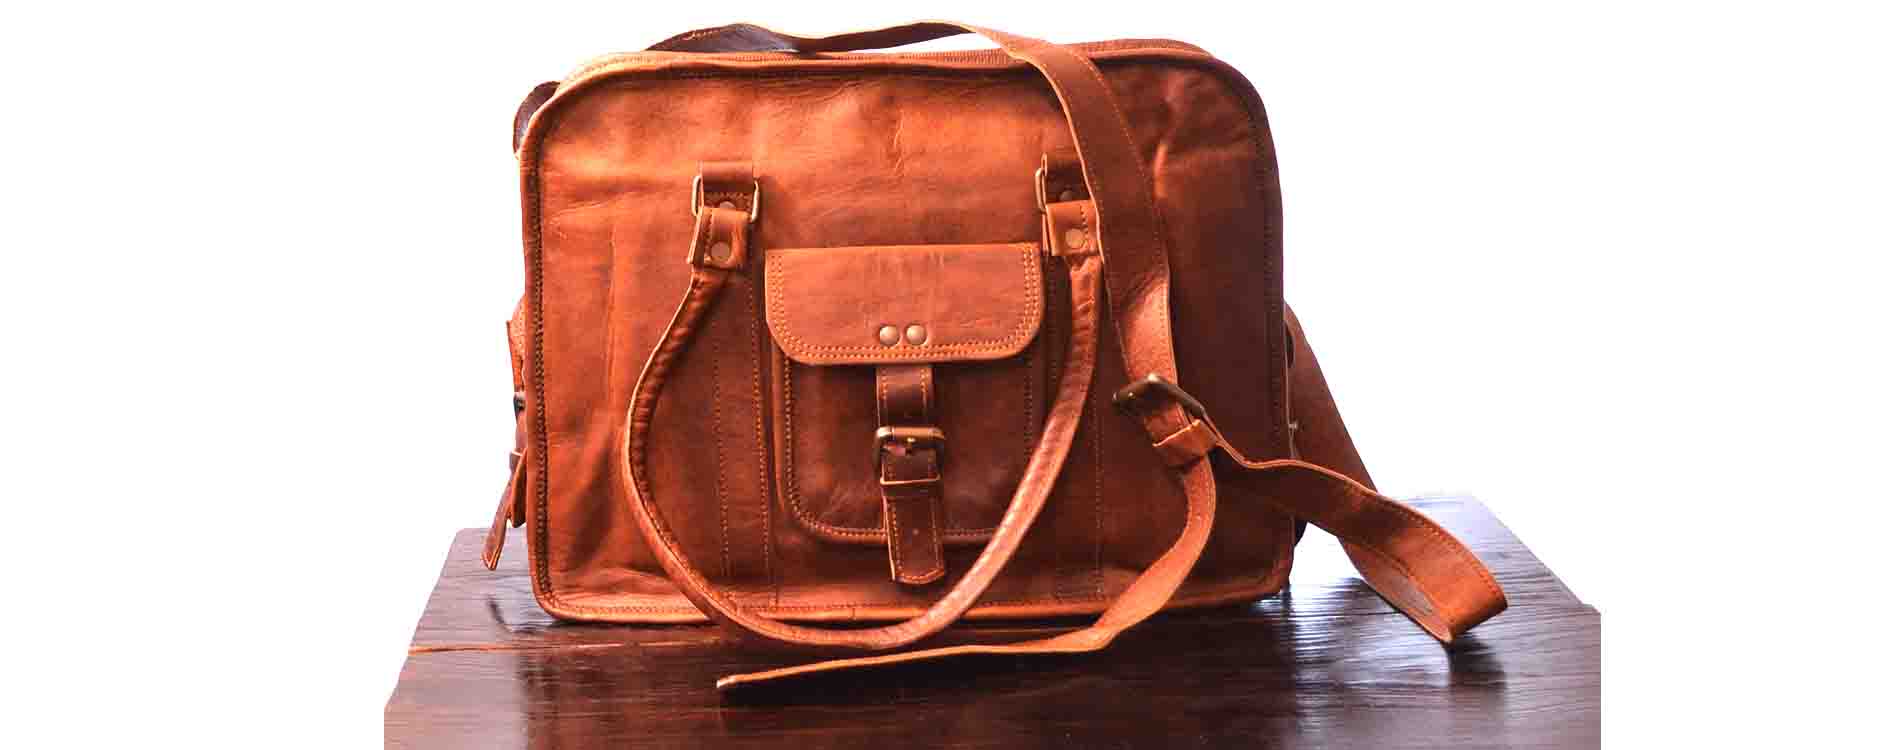 Rhinoland Genuine Leather Vintage Laptop Bag Messenger Handmade Briefcase Satchel Bag Cross body Shoulder Bag